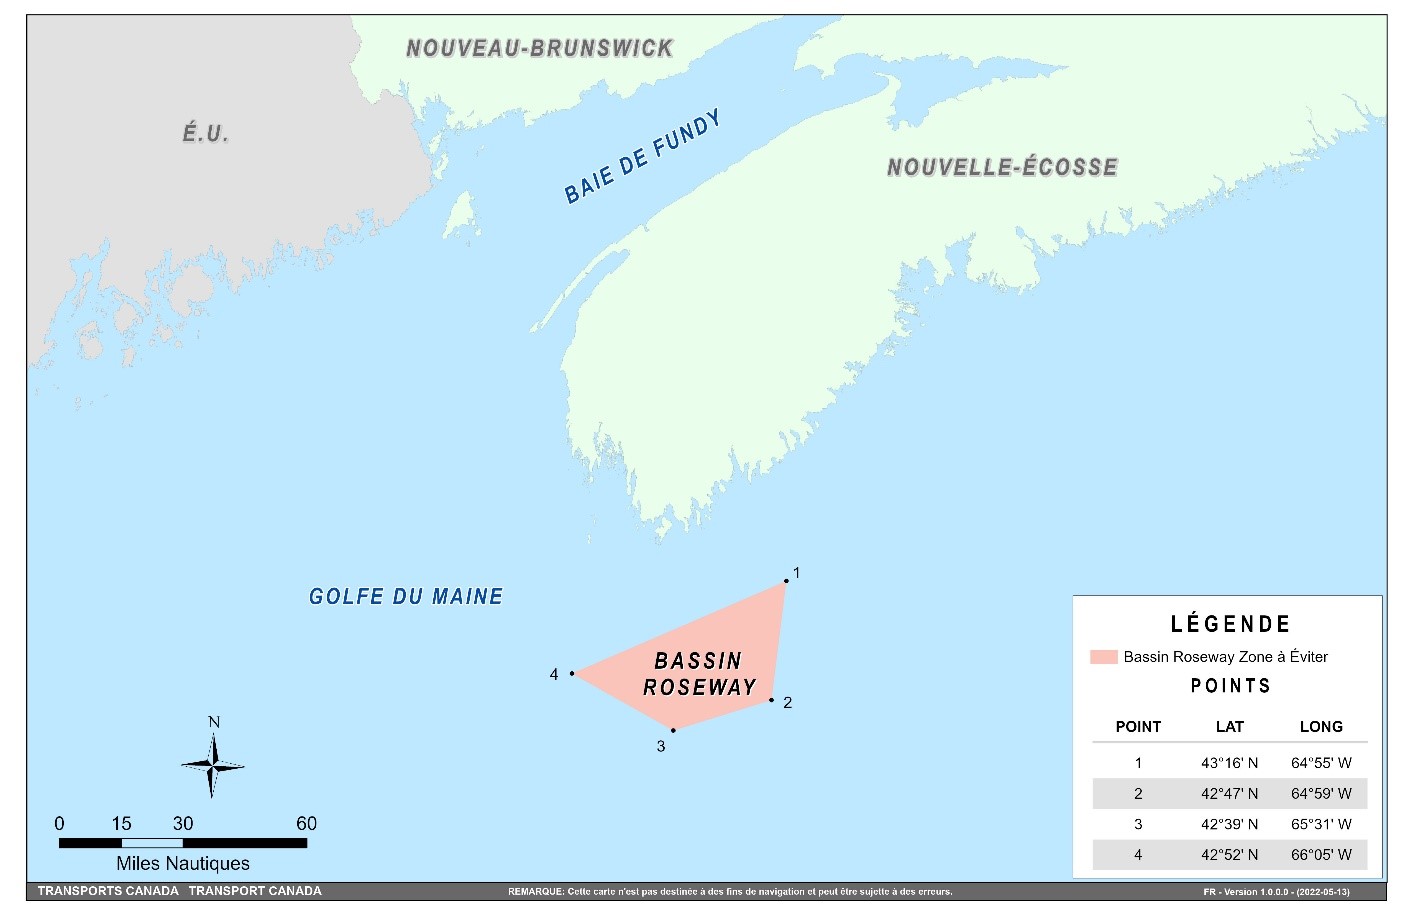 Carte montrant le bassin Roseway, zone à éviter, situé à environ 20 milles marins au sud de l’île Cap-de-Sable (Nouvelle-Écosse). 